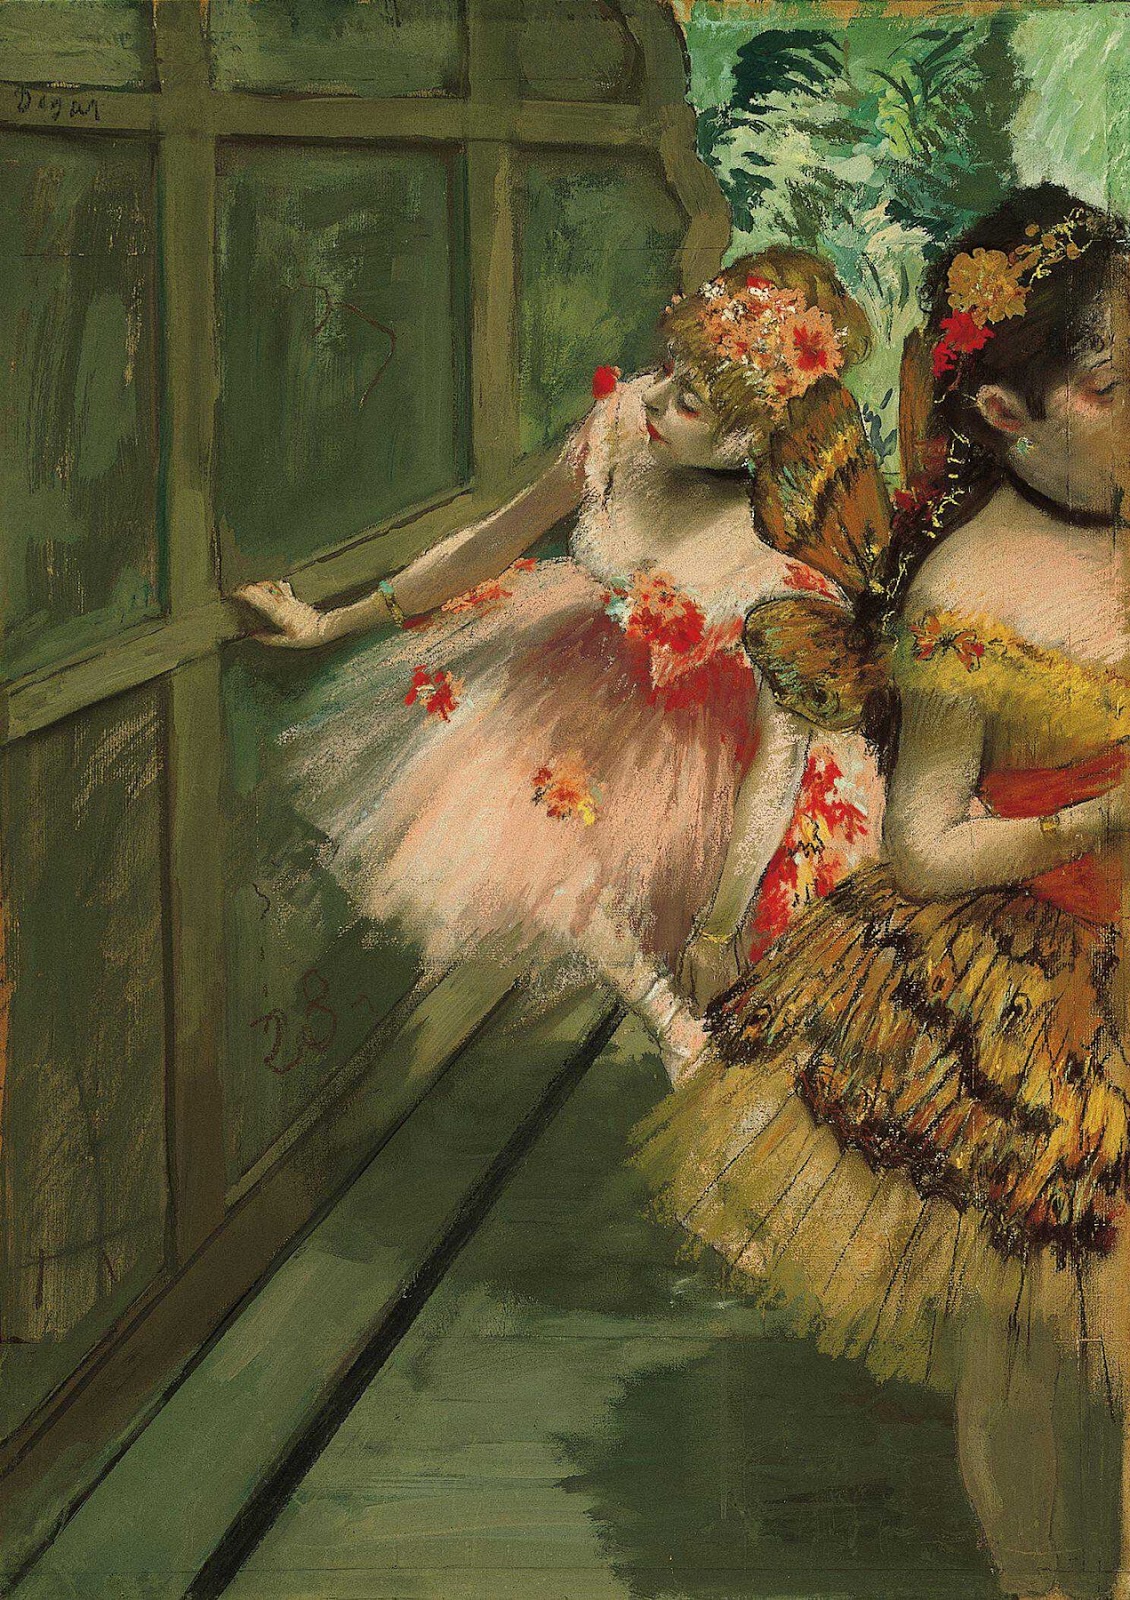 準備登台的舞者 by Edgar Degas - c. 1876-1878 - 69.2 x 50.2 cm 